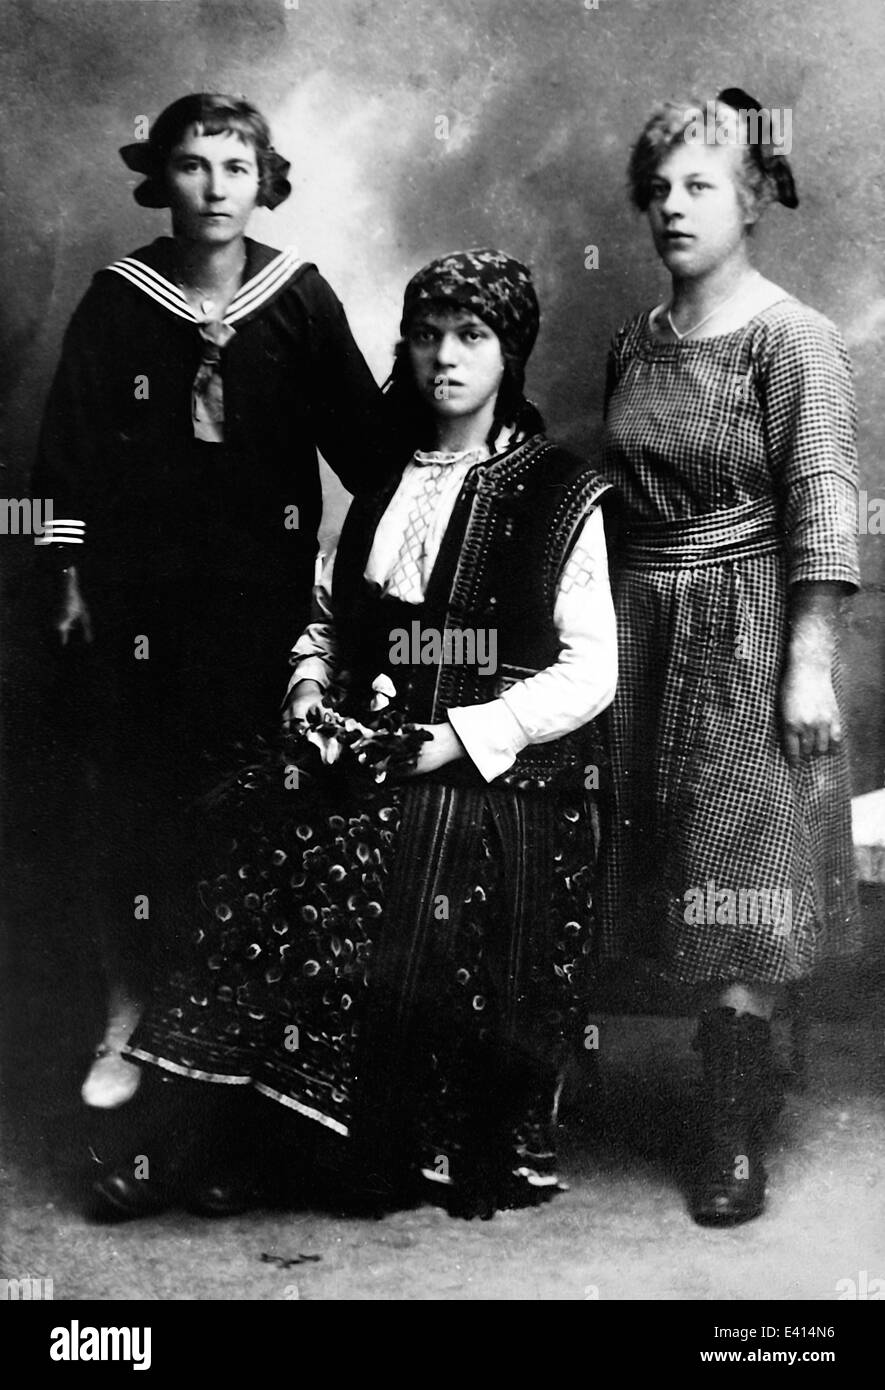 L'Allemagne, la photographie historique de trois femmes de mascarade début de 20e siècle Banque D'Images